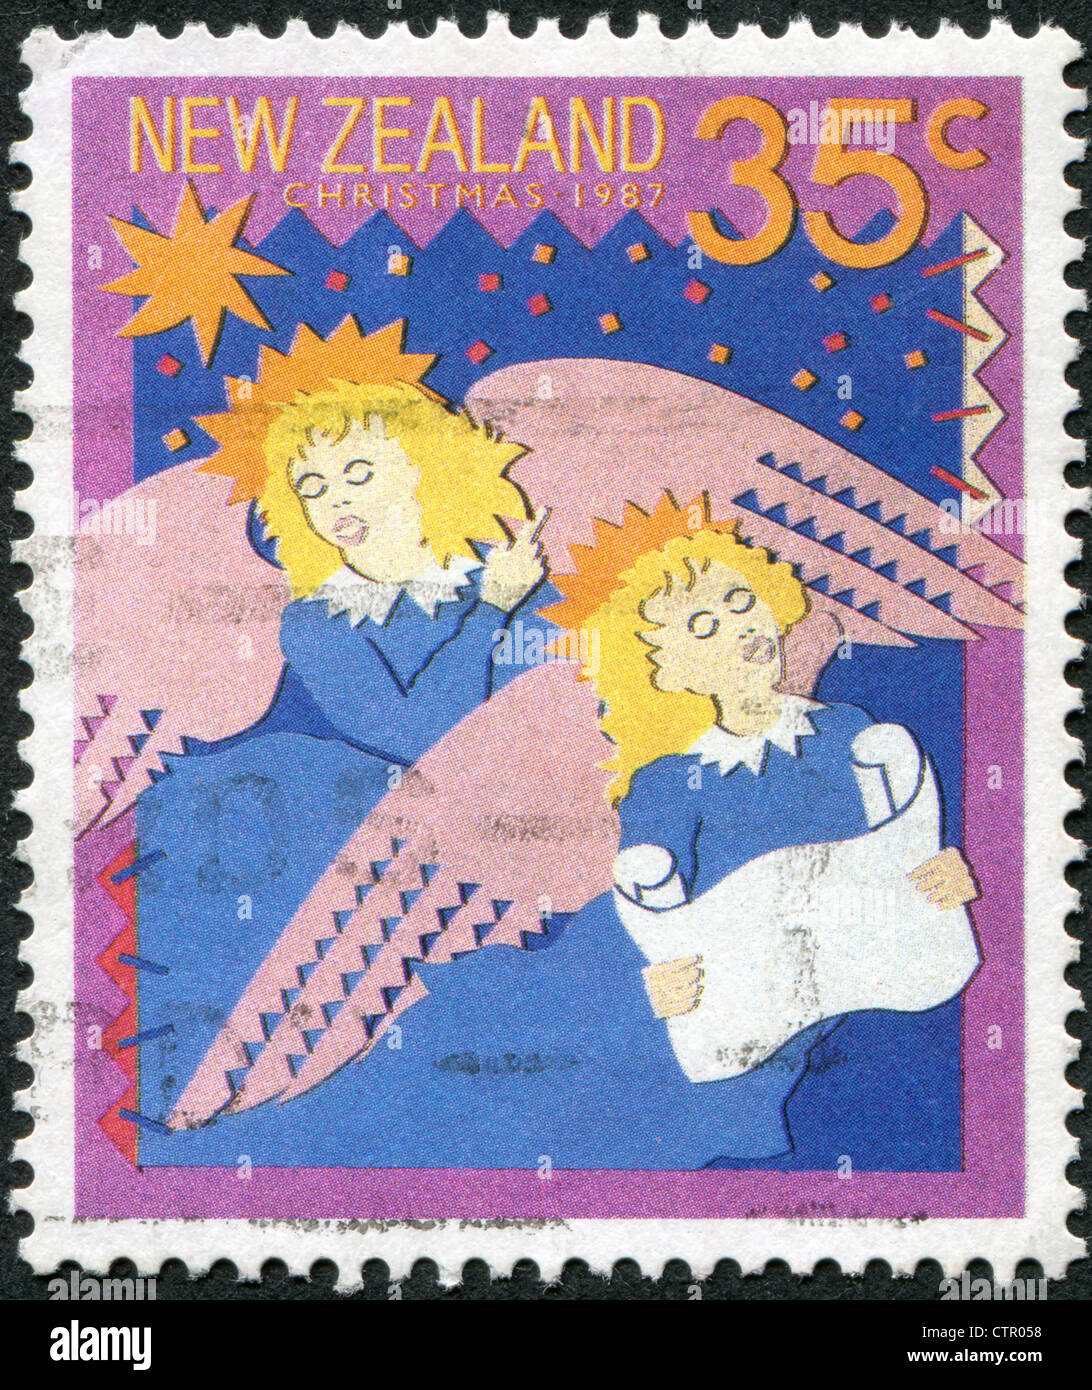 Eine Briefmarke gedruckt in Neuseeland, widmet sich Weihnachten, singen Weihnachtslieder, zeigt: Hark! The Herald Angels Sing, ca. 1987 Stockfoto